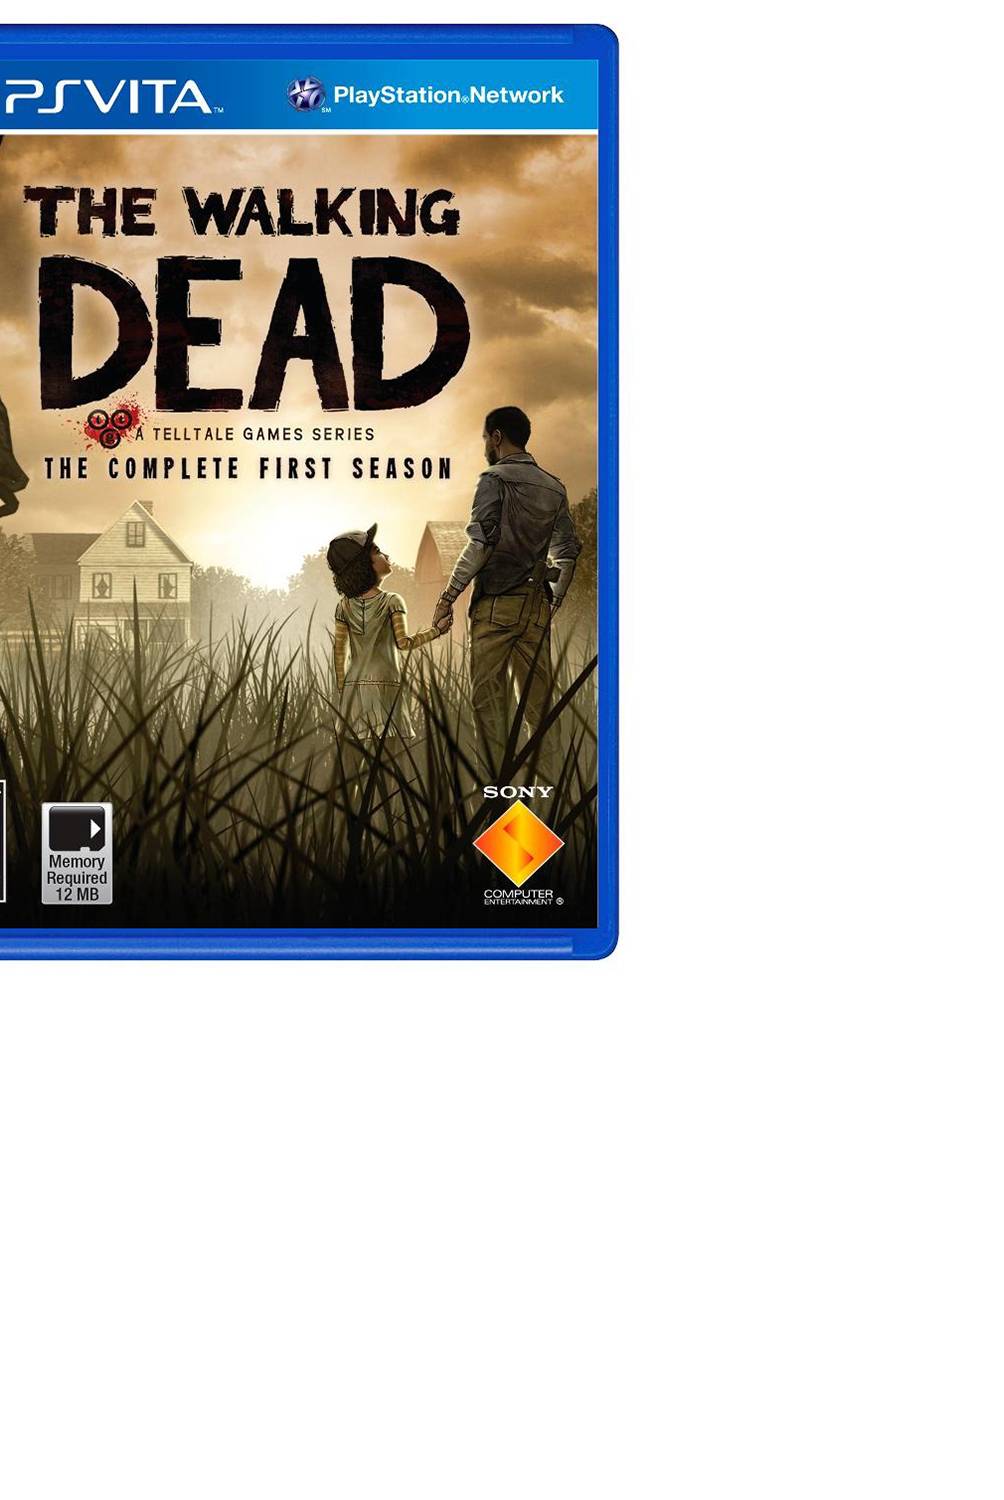 Sony - The Walking Dead PSV